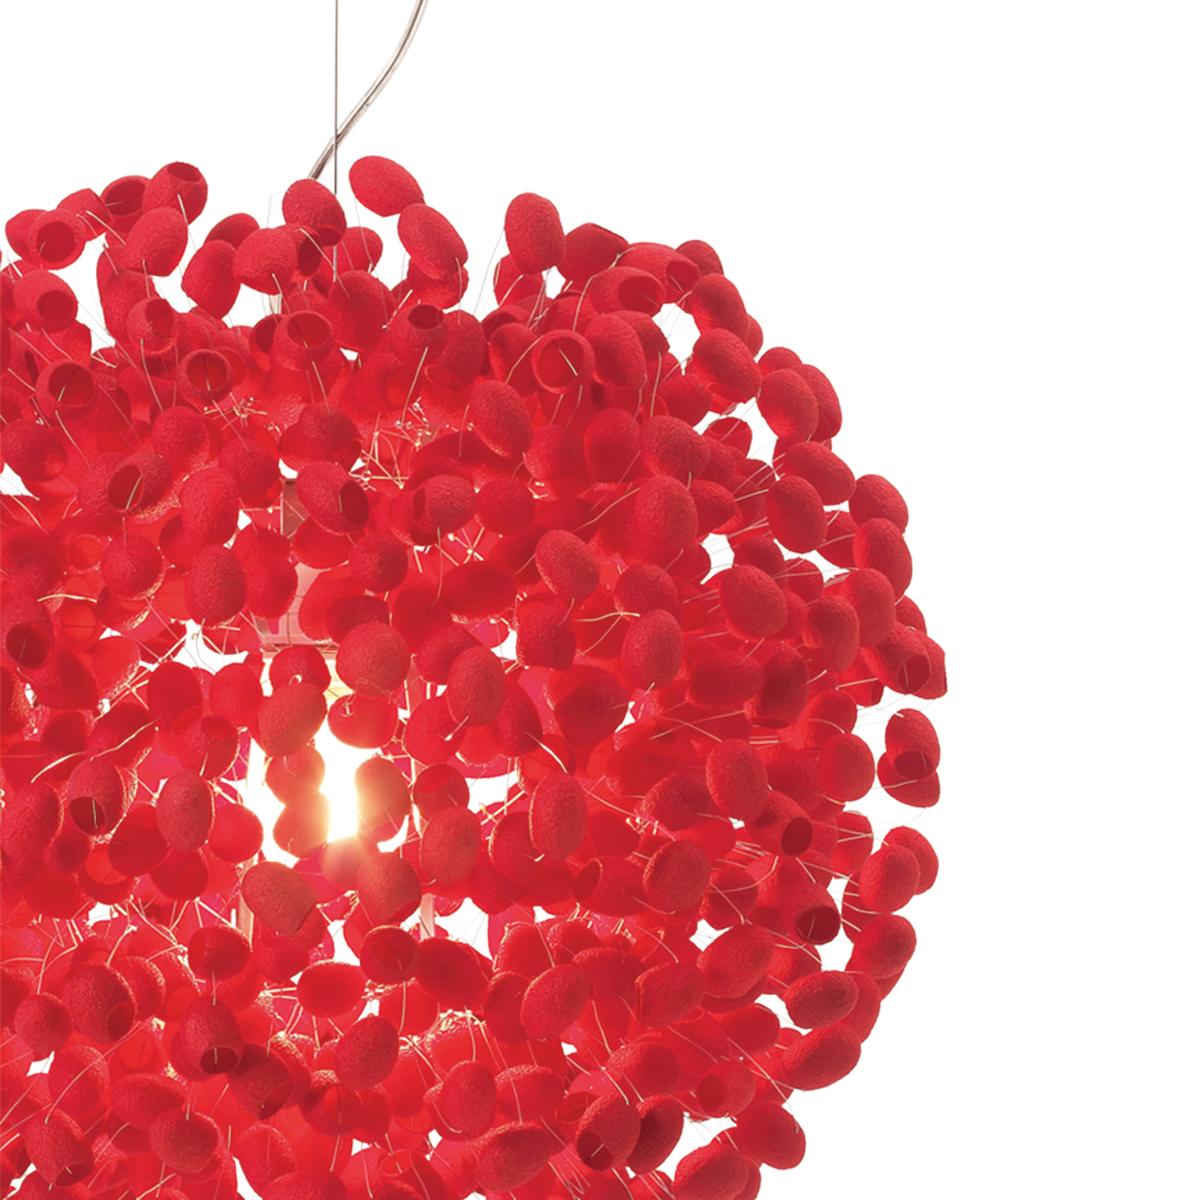 Cherry Moon est une lampe à suspension artisanale en cocon de soie, de couleur rouge cerise. 
Le diffuseur est formé d'une configuration aléatoire de cocons de soie sélectionnés à la main (qui ont été pré-teints d'une subtile couleur rouge cerise).